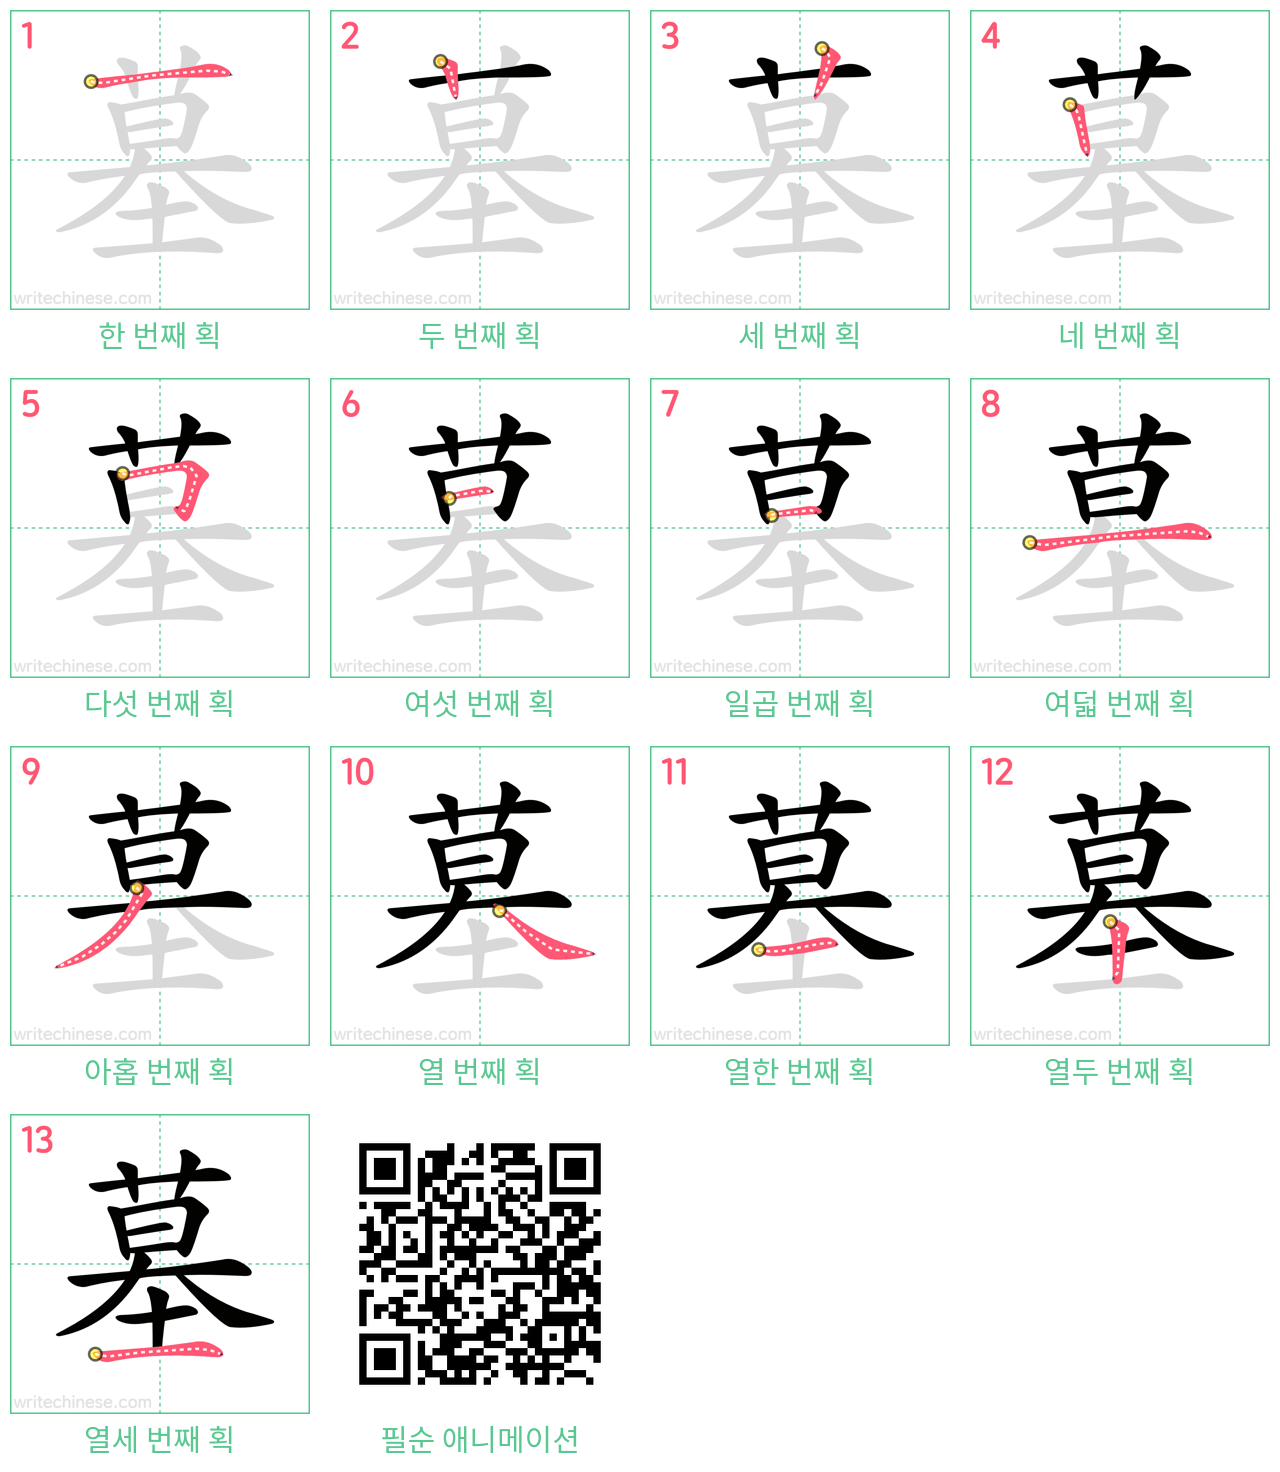 墓 step-by-step stroke order diagrams